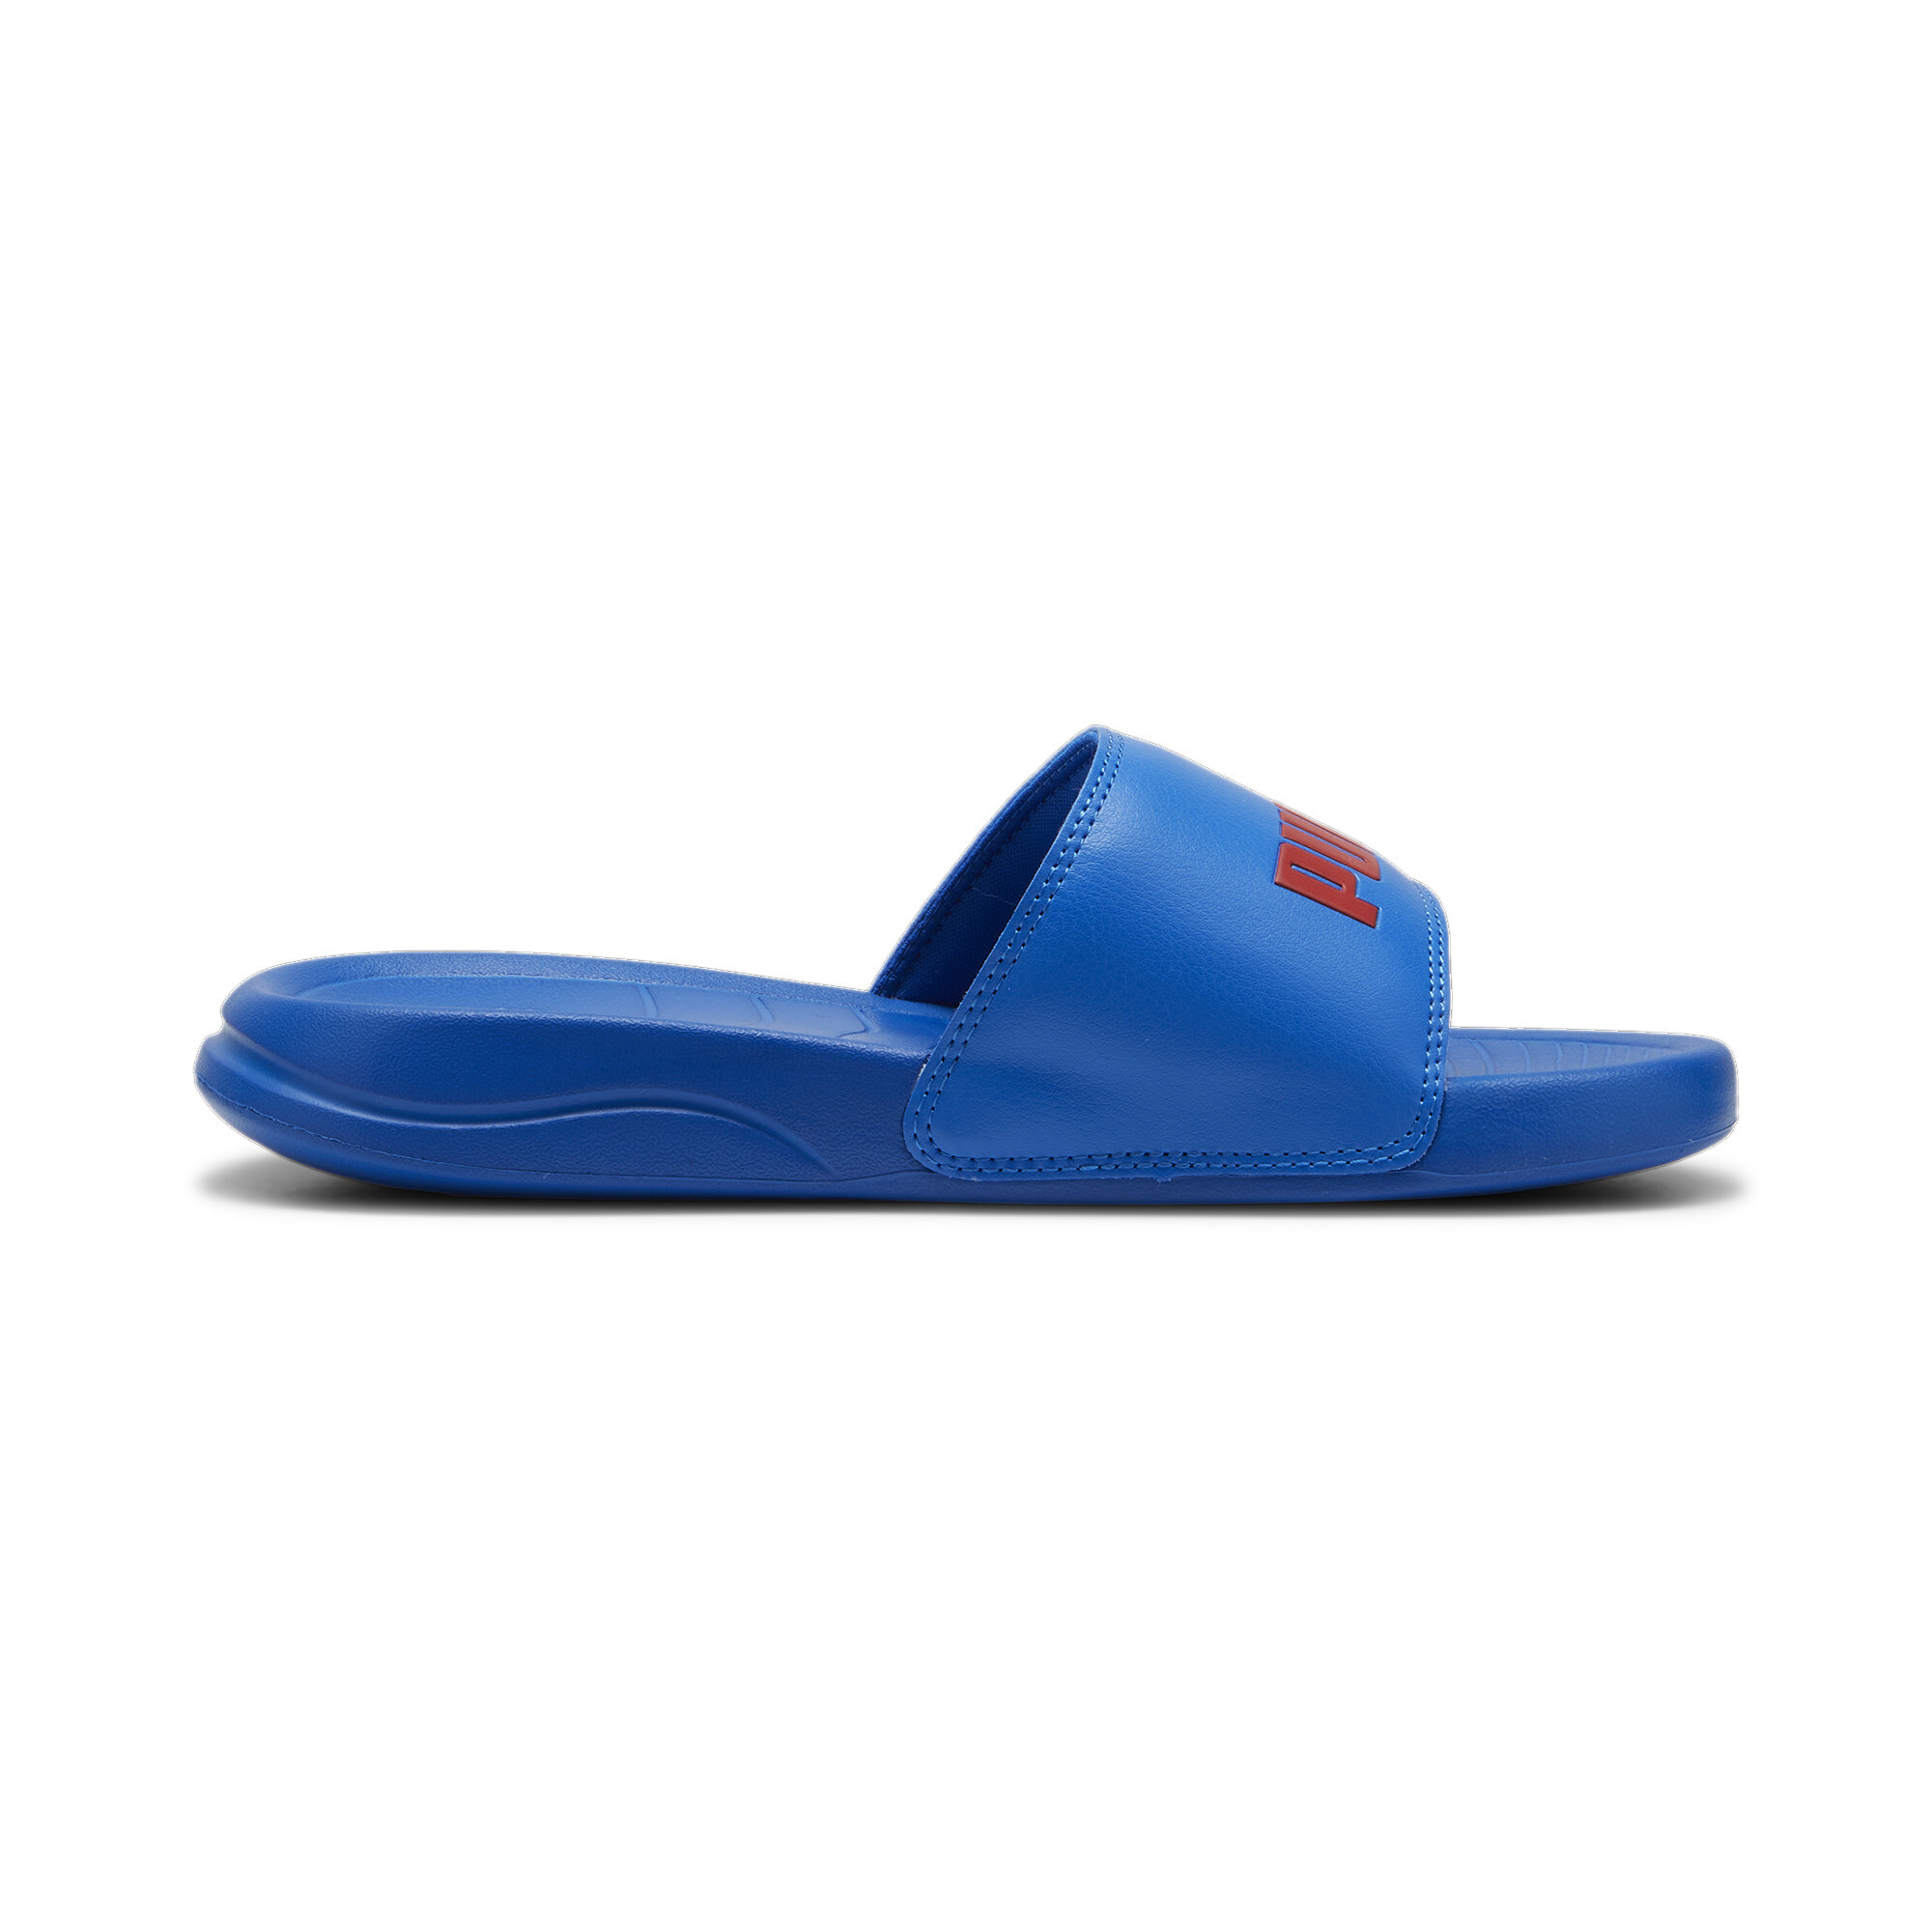 PUMA Popcat 20 Youth Sandals In 80 - Blue, Size EU 37